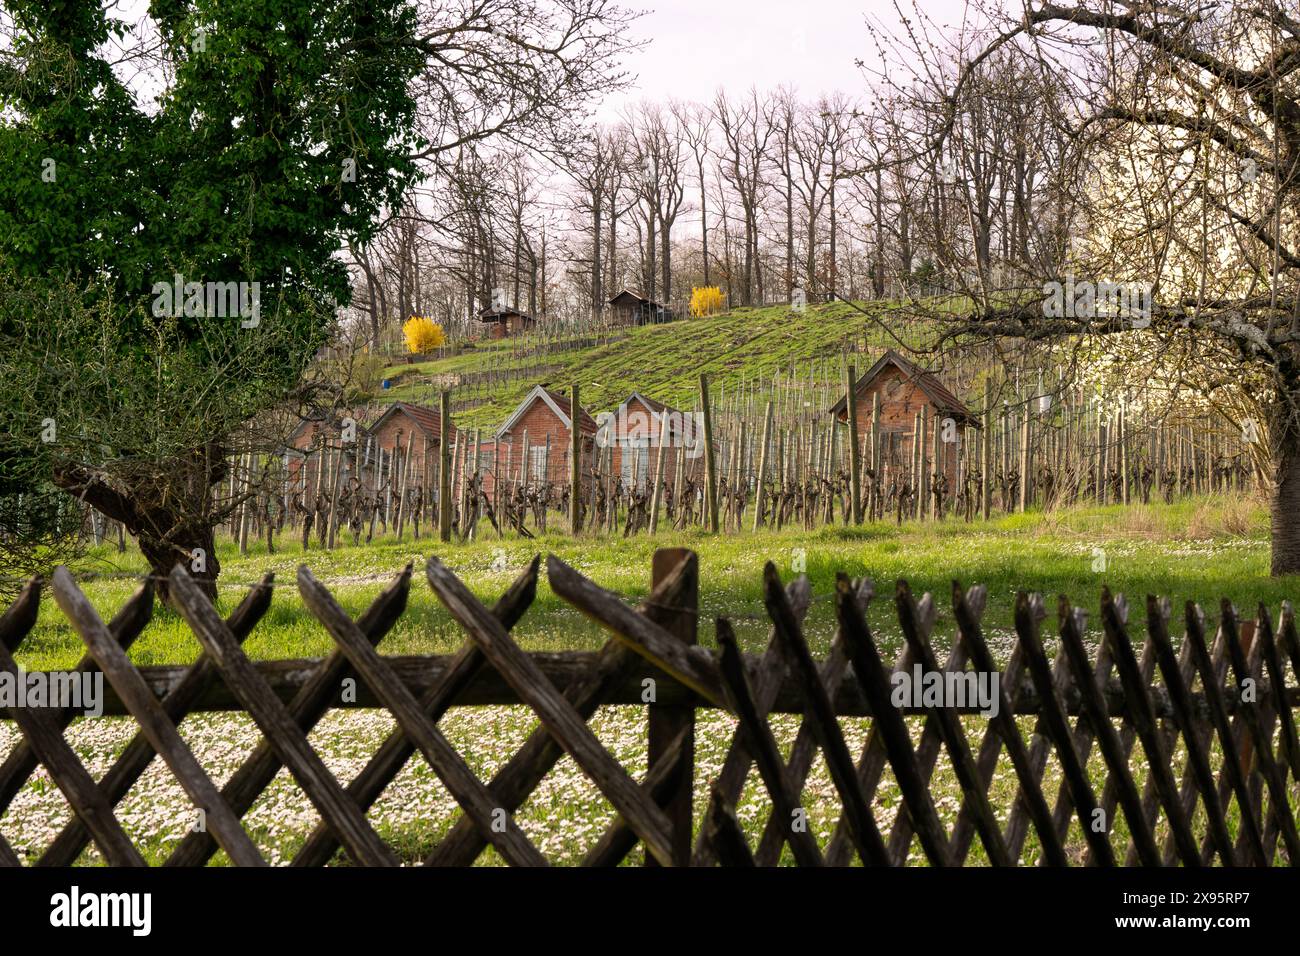 Frühlingsstimmung in Süddeutschland: Gänseblümchen, blühende Bäume und karge Reben. Stockfoto